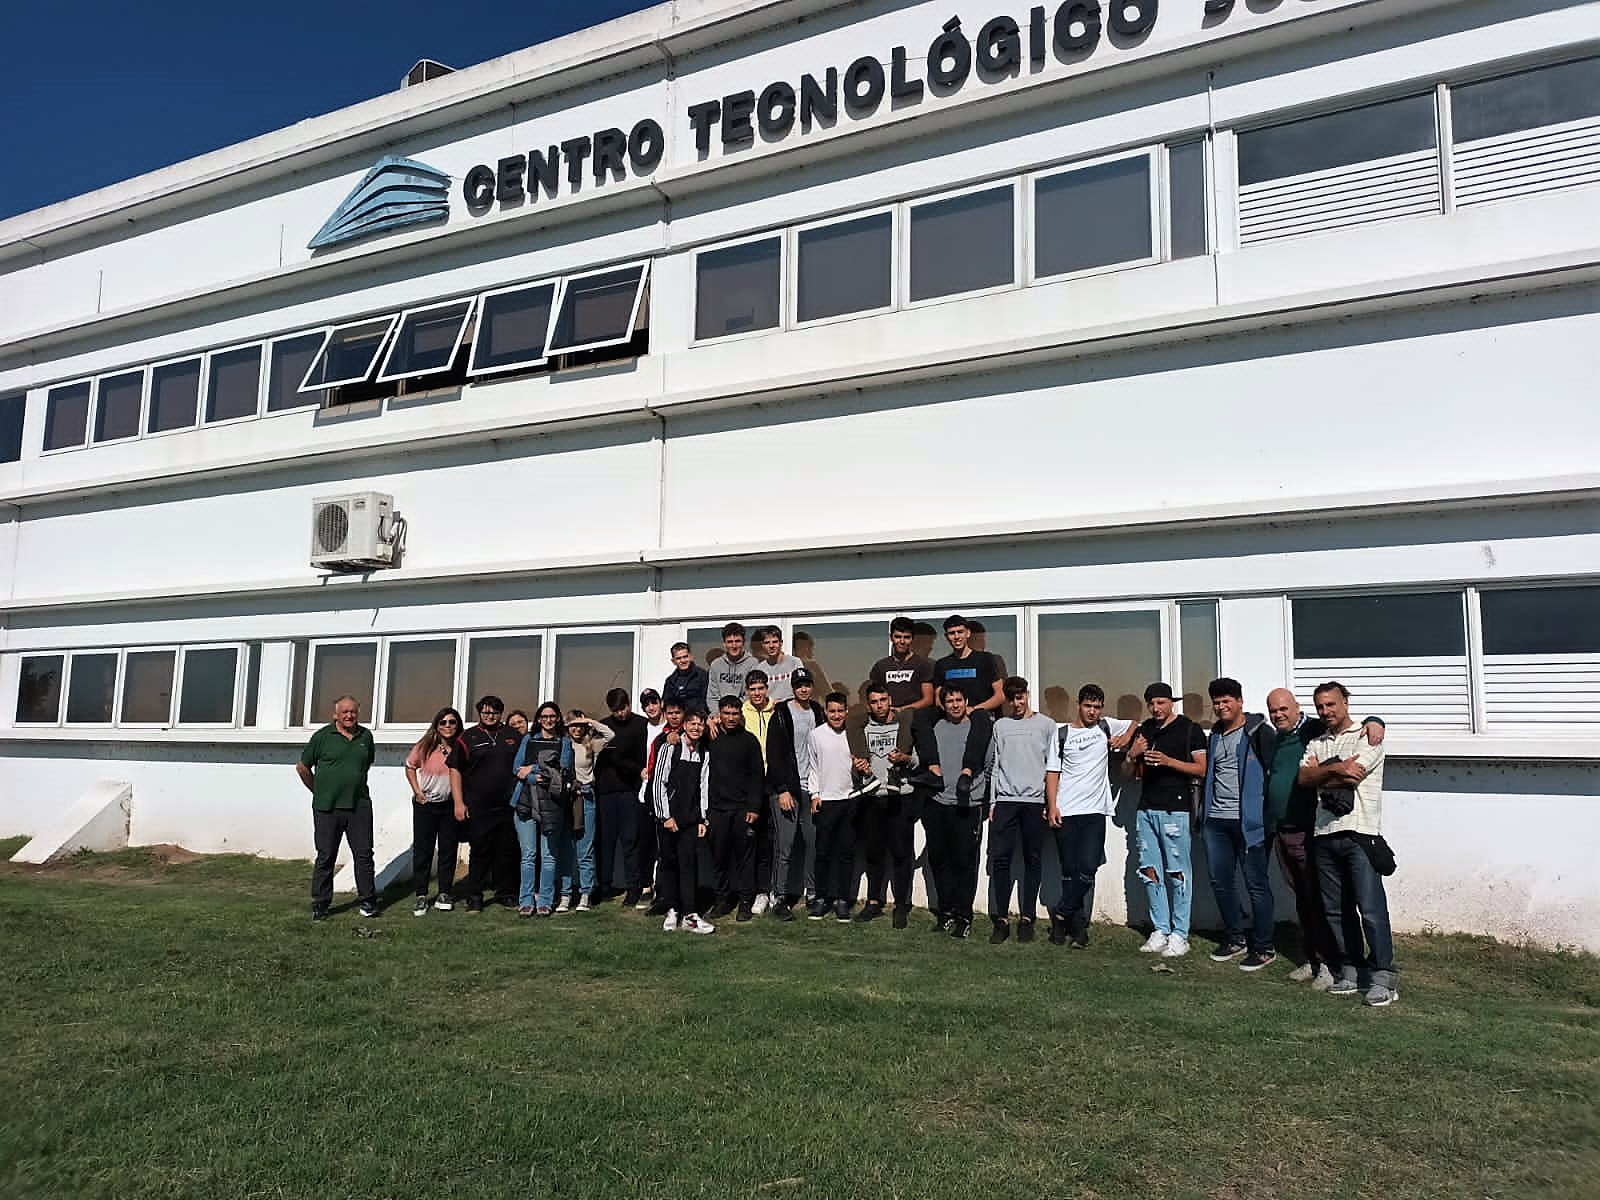 Visita de escuelas técnicas al Centro Tecnológico José Censabella